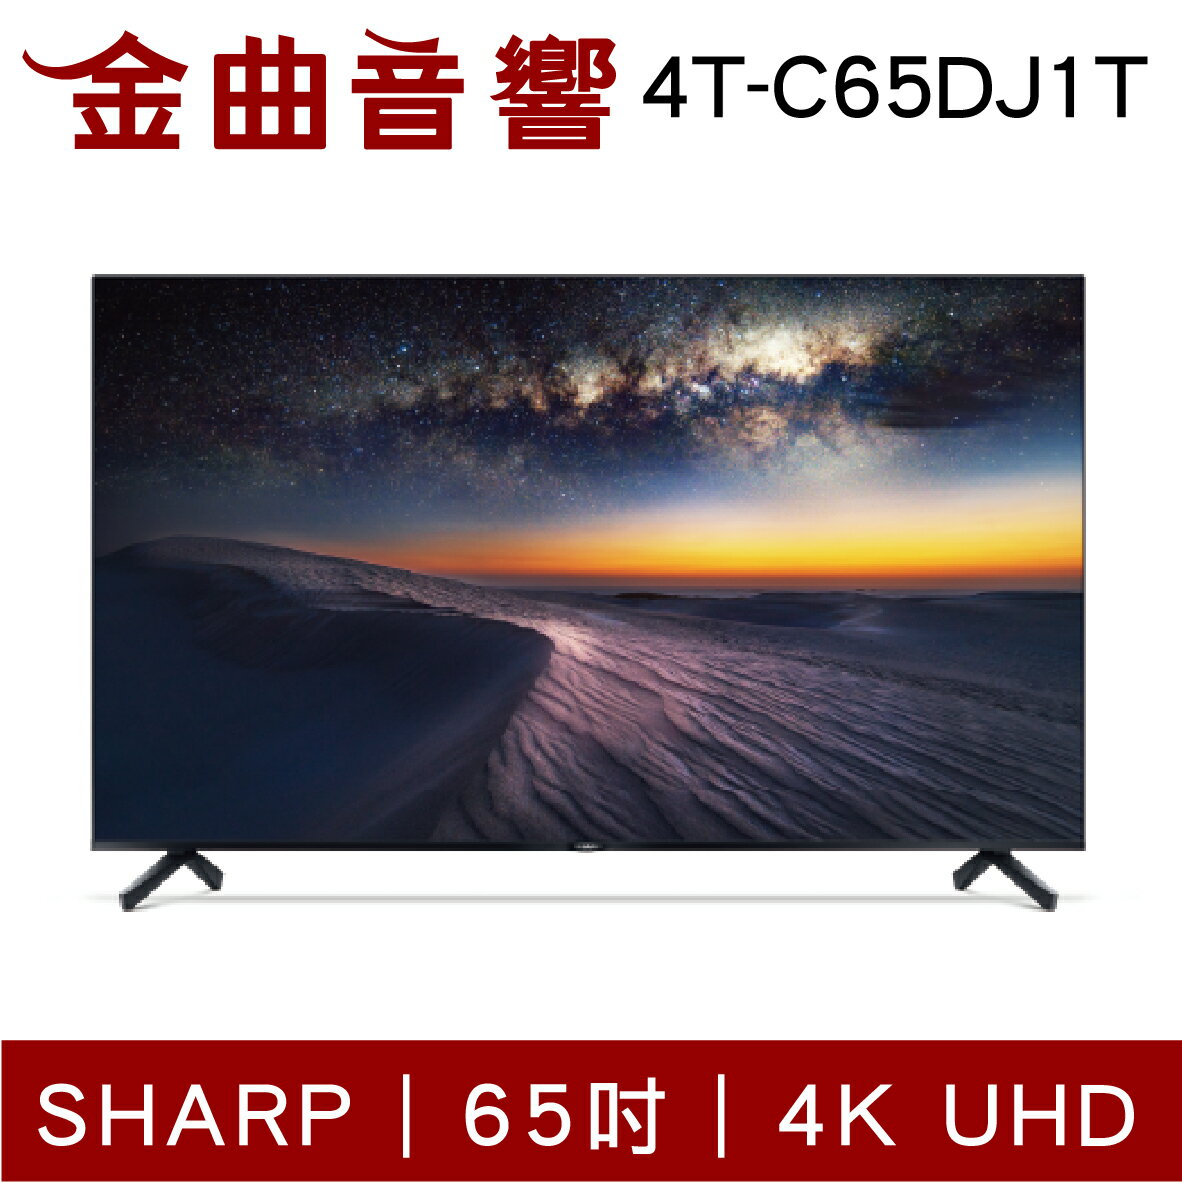 SHARP 夏普 4T-C65DJ1T 65吋 4K UHD Android TV 液晶電視 2022 | 金曲音響